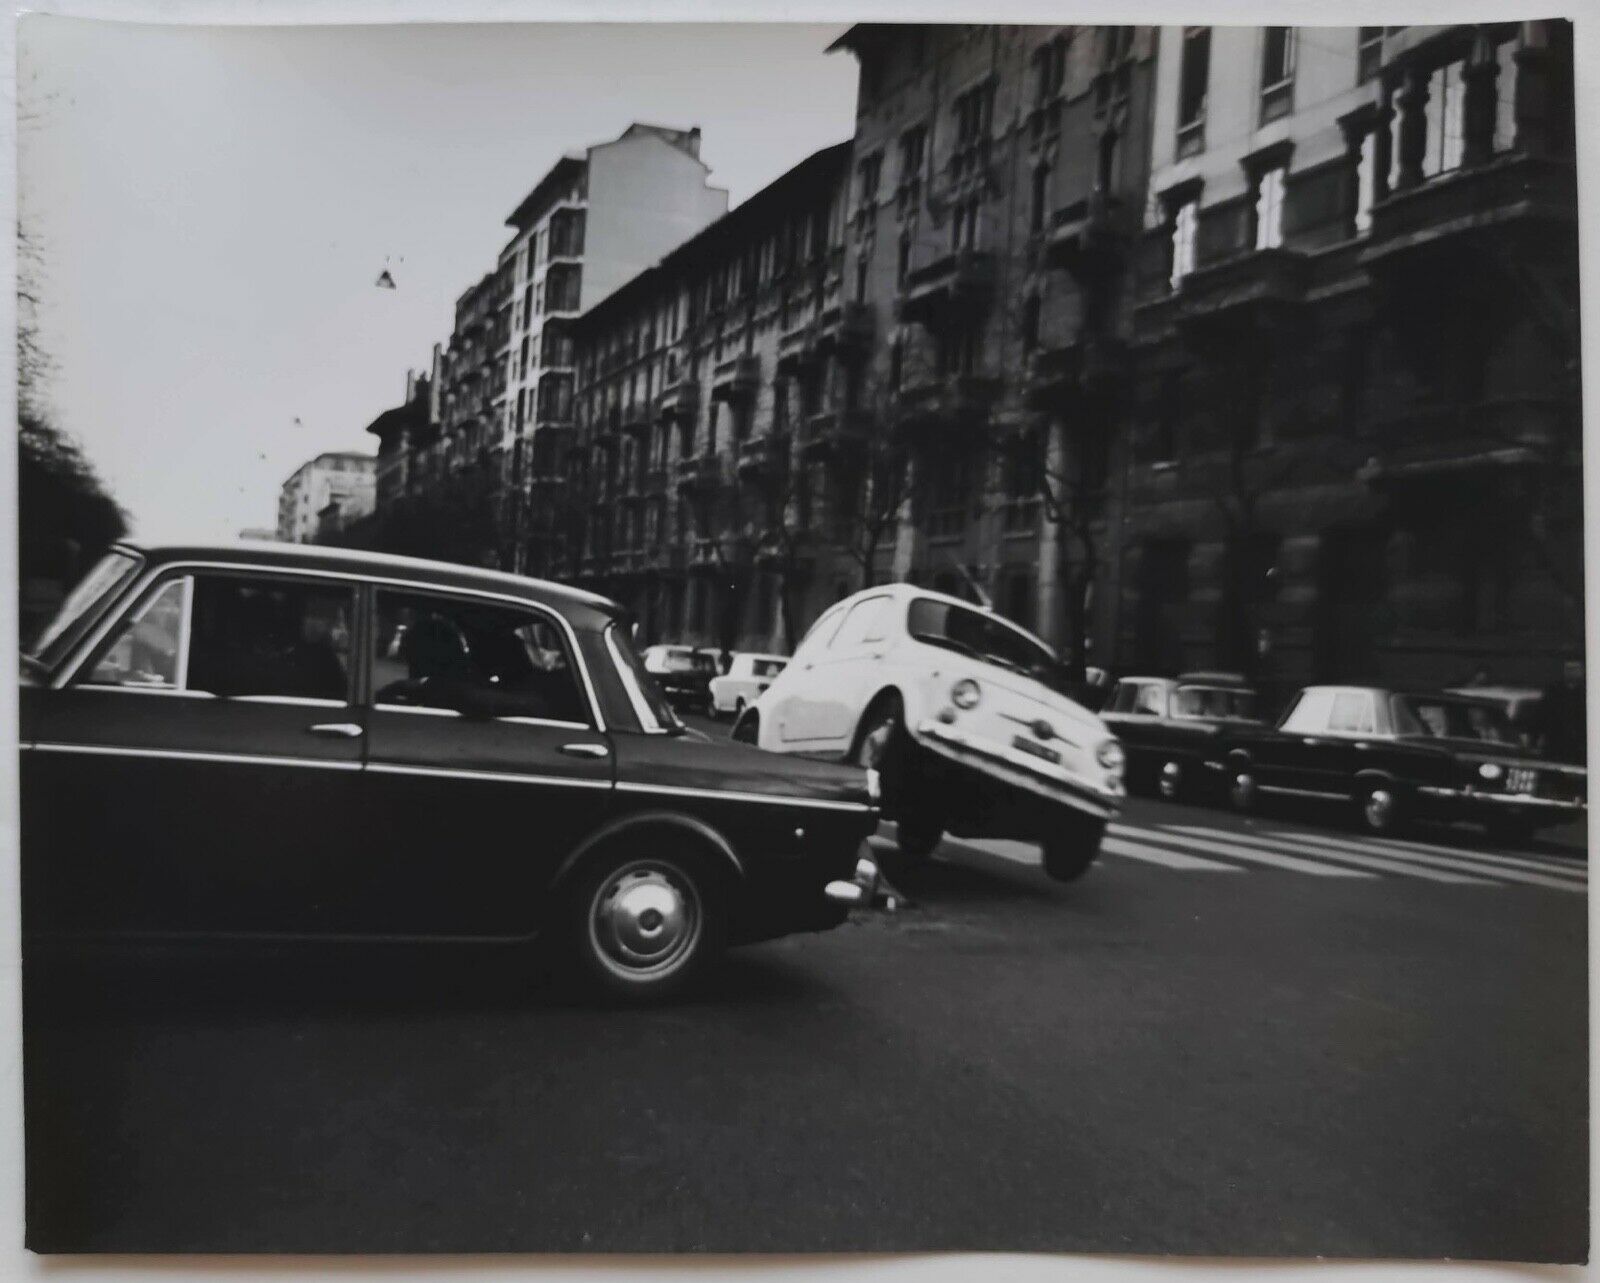 Via Elba , 1968 (parallela di Via G. Washington). Fotogramma film Banditi a Milano , sequenza di inseguimento automobilistico "char case". (Regia Carlo Lizzani)